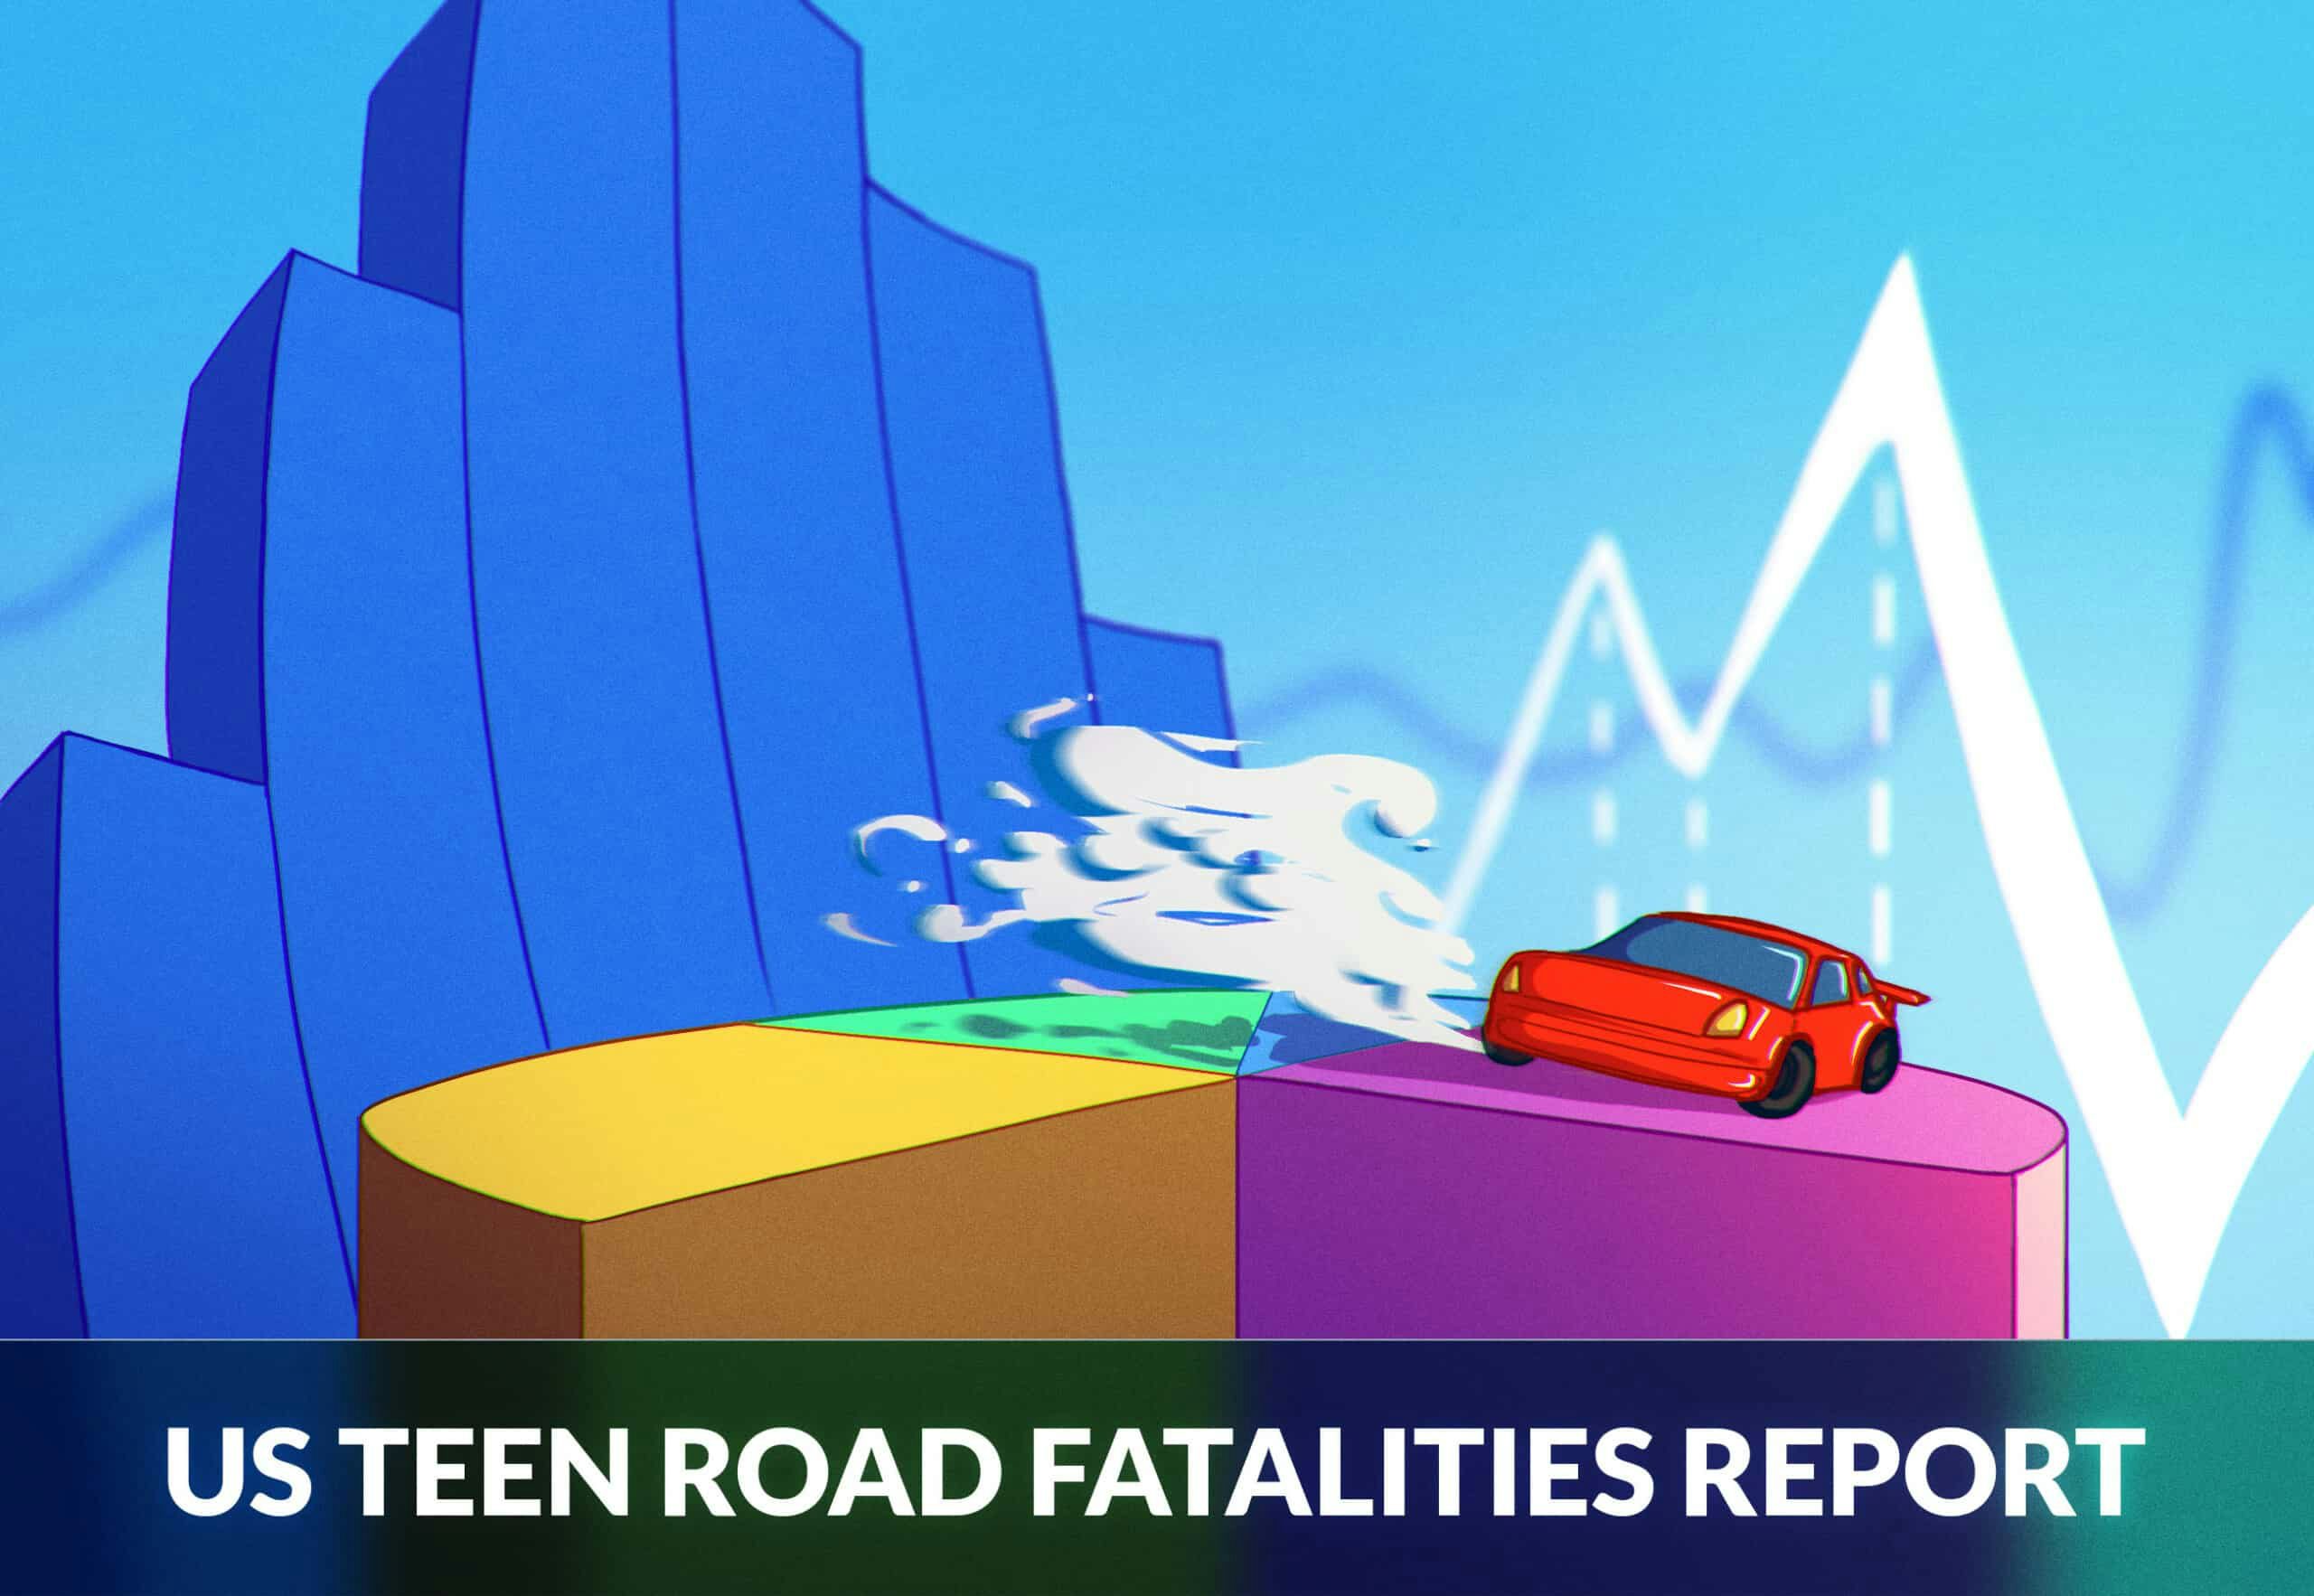 US TEEN ROAD FATALITIES REPORT